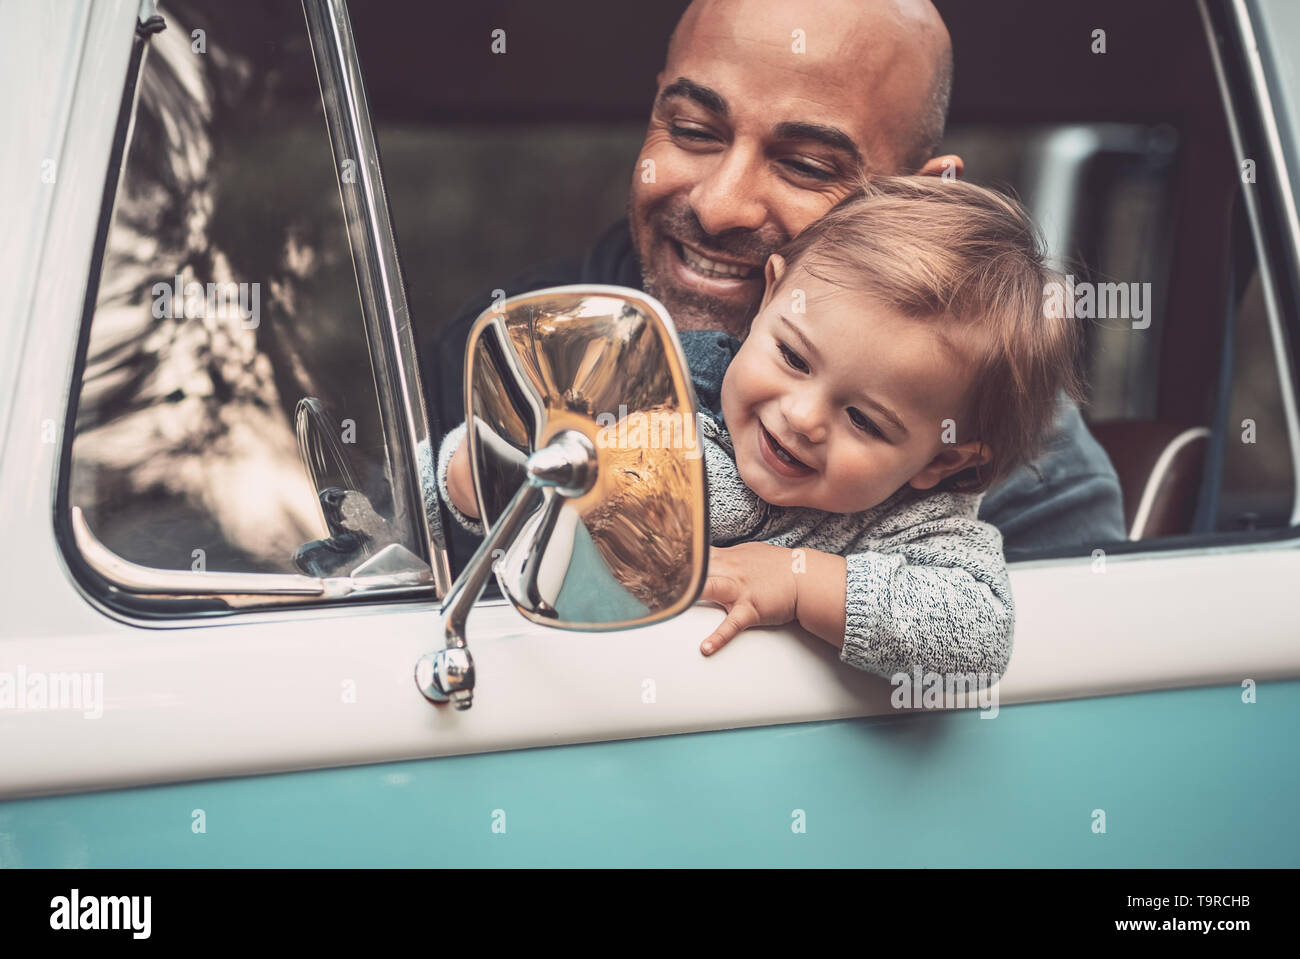 Porträt einer fröhlichen Vater mit niedlichen kleinen Sohn, der ein Auto fährt, Papa Lehre sein kostbares Baby einen Van zu fahren, mit Freude die Zeit togethe Stockfoto